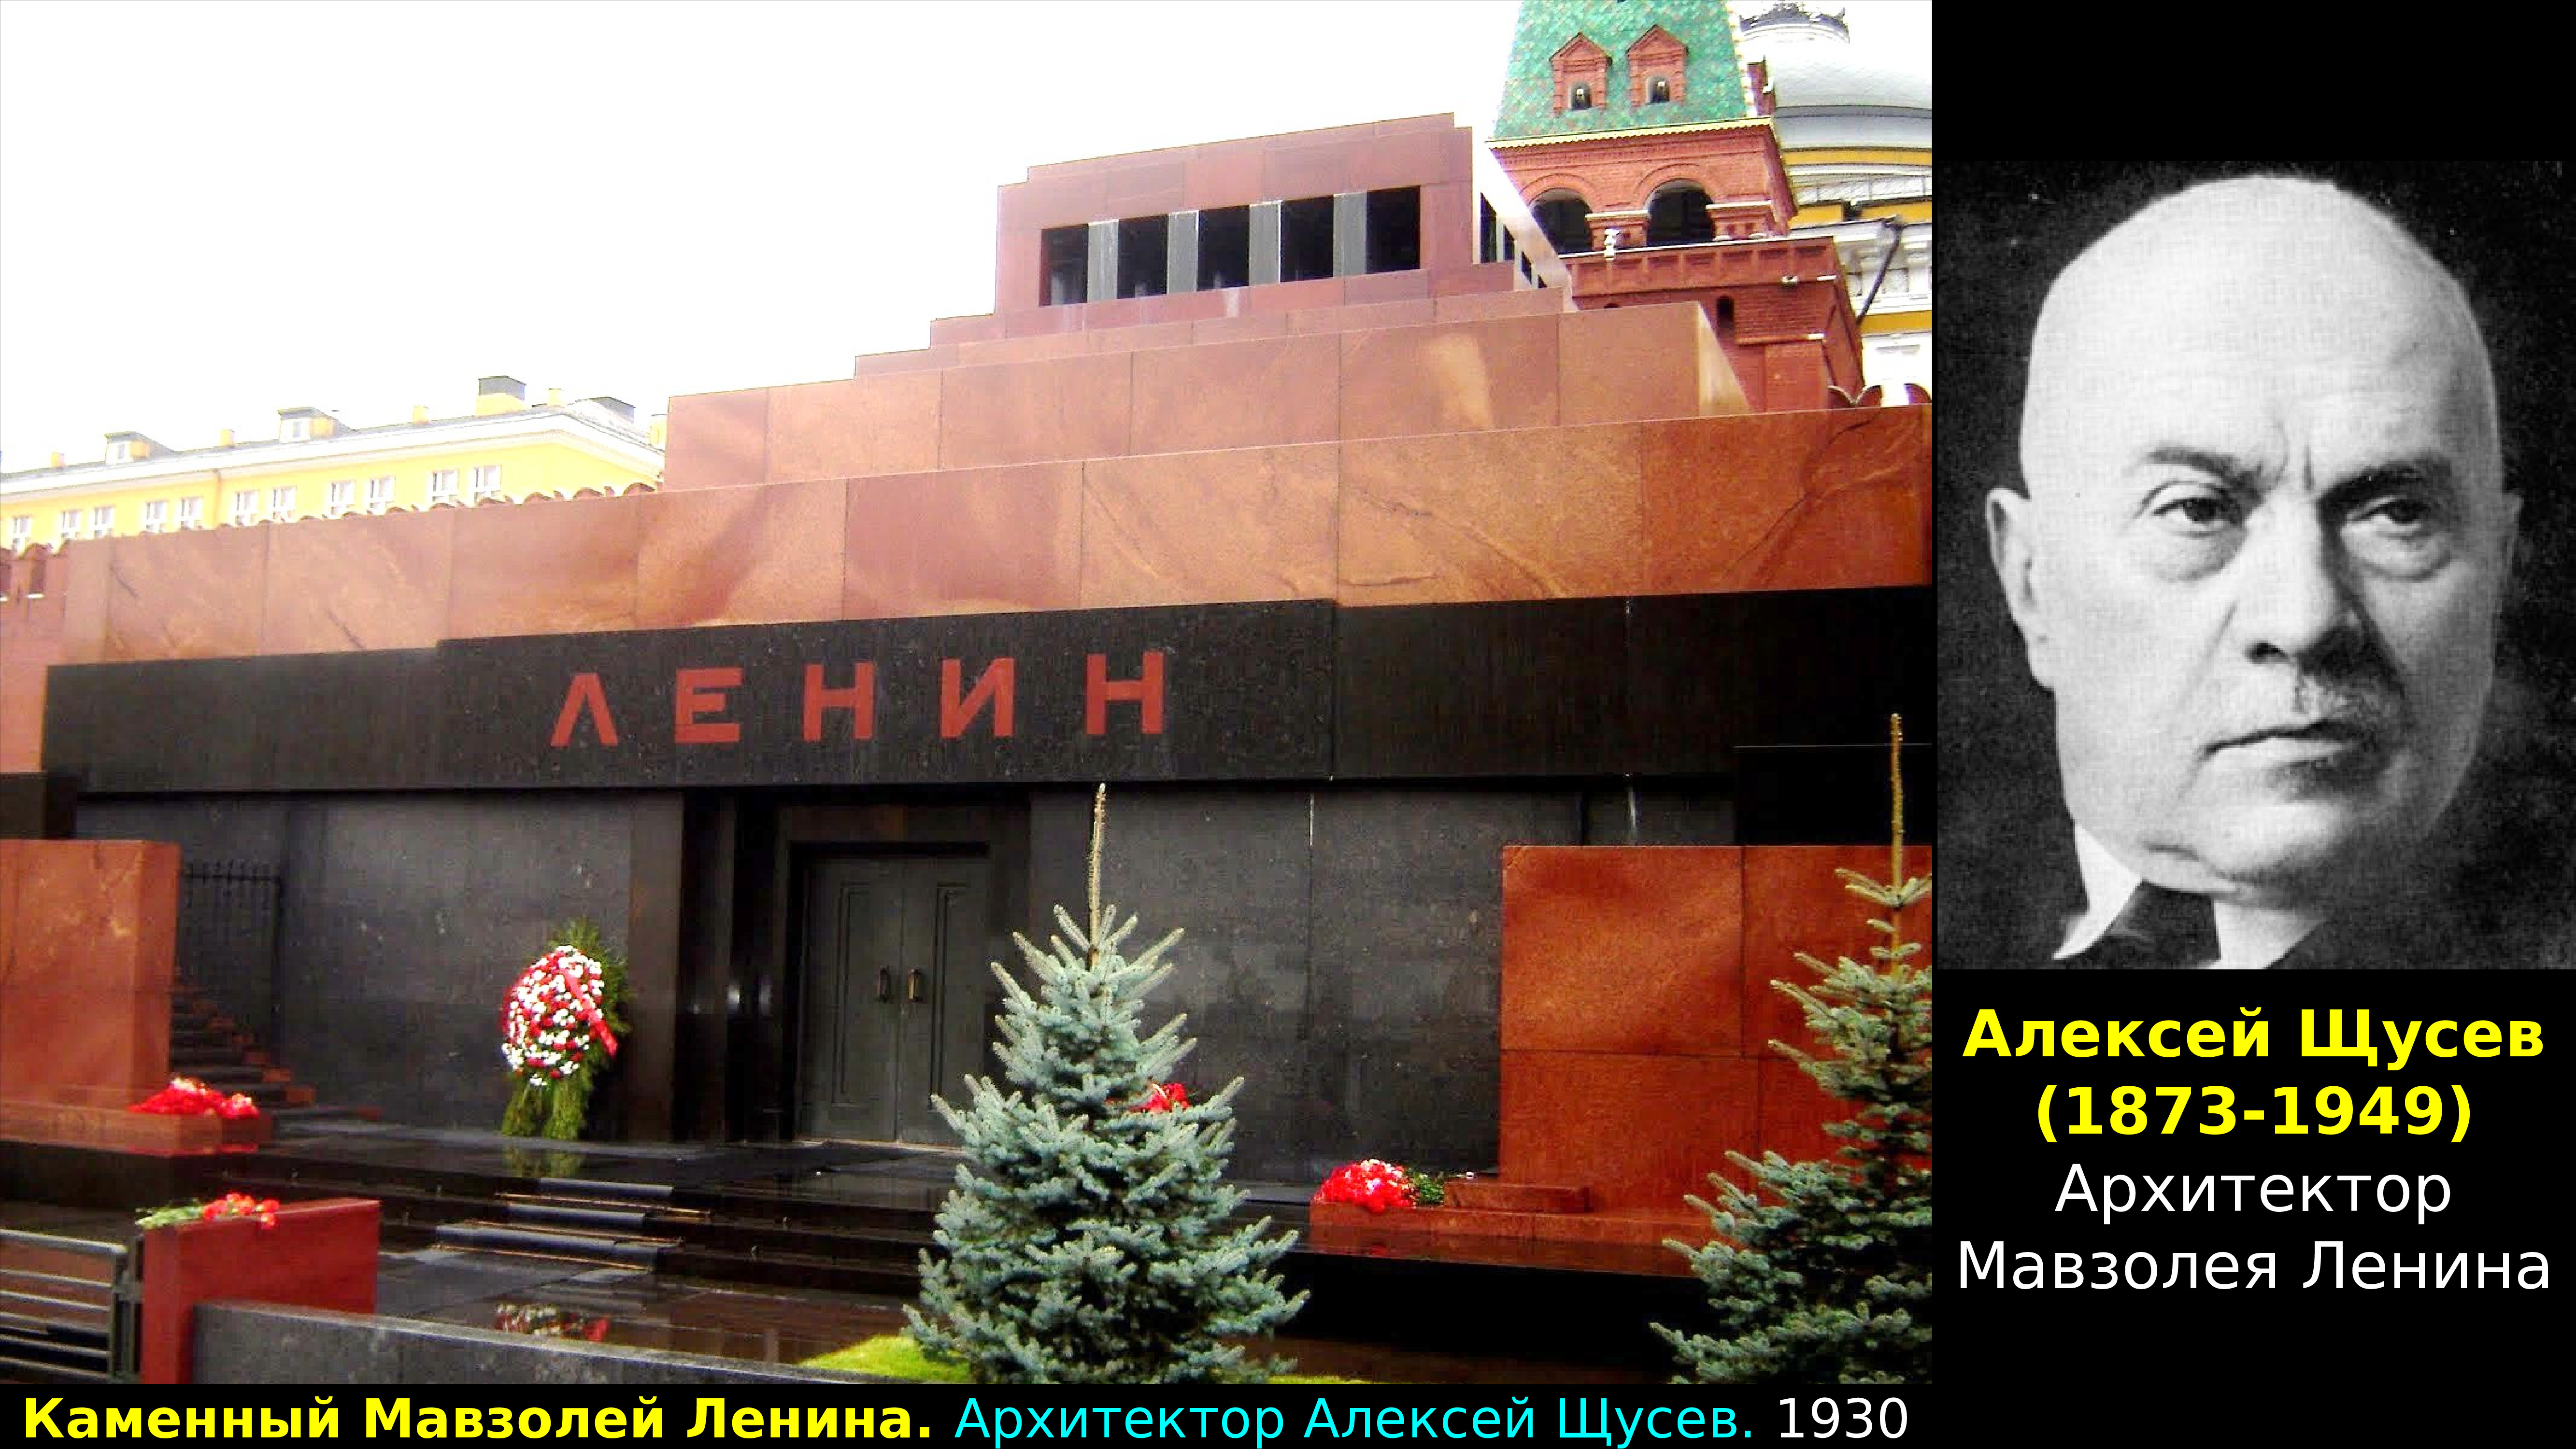 Мавзолей Ленина Москва а.в.Щусев 1924-1930